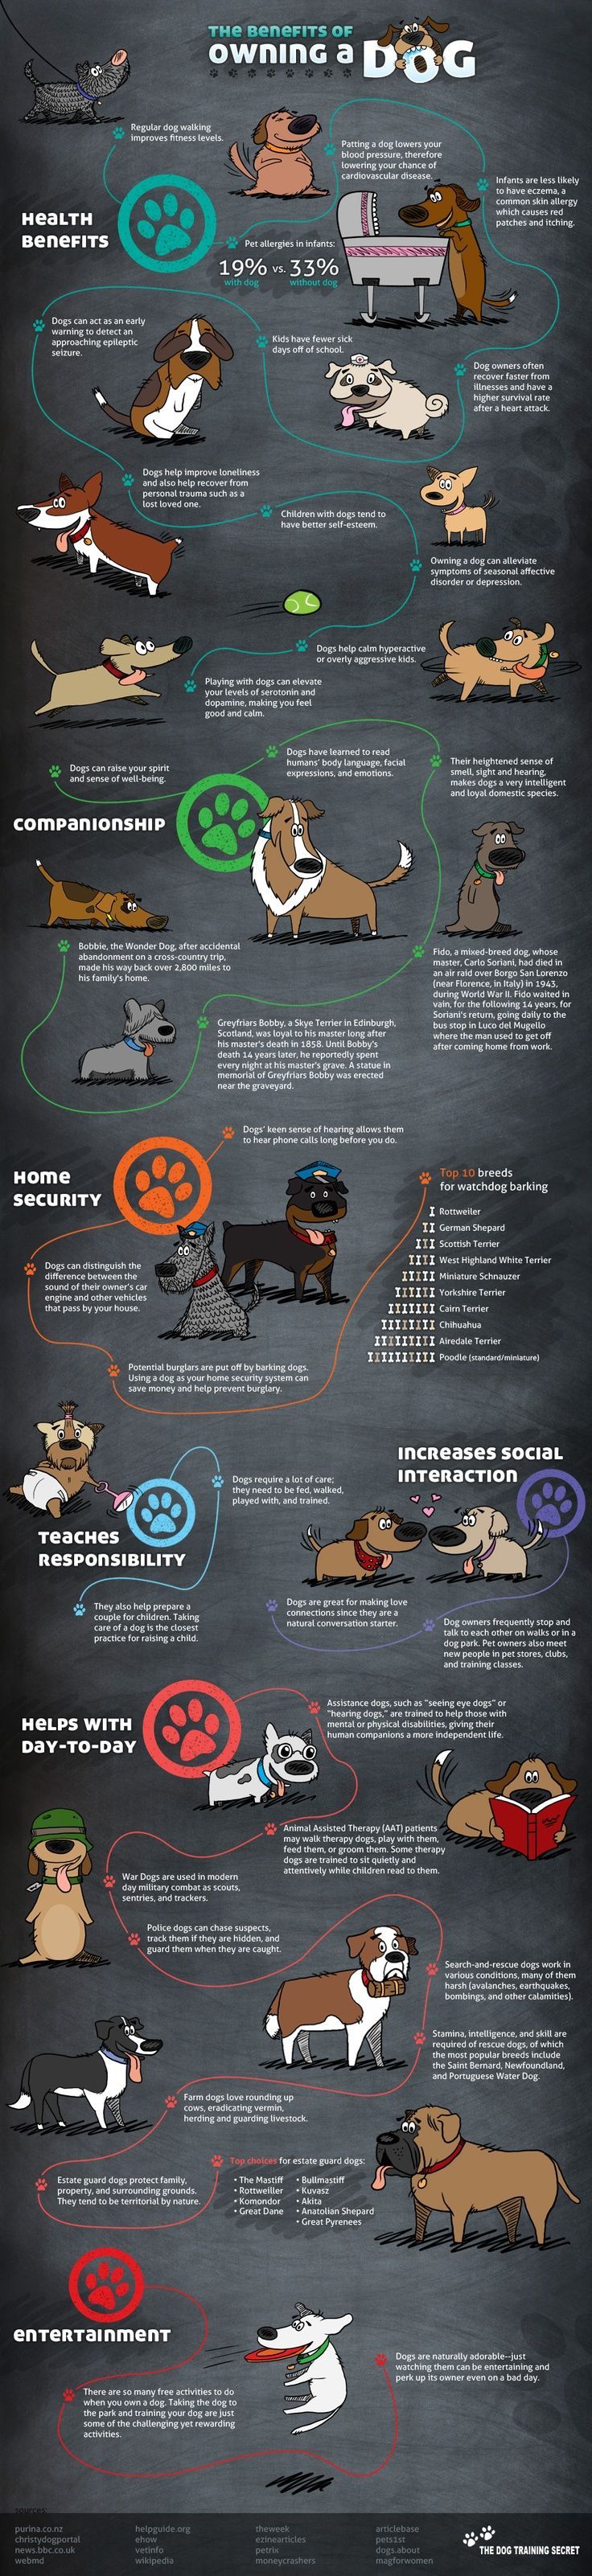 Benefits of Dog Ownership Infographic - Kurgo Dog Products